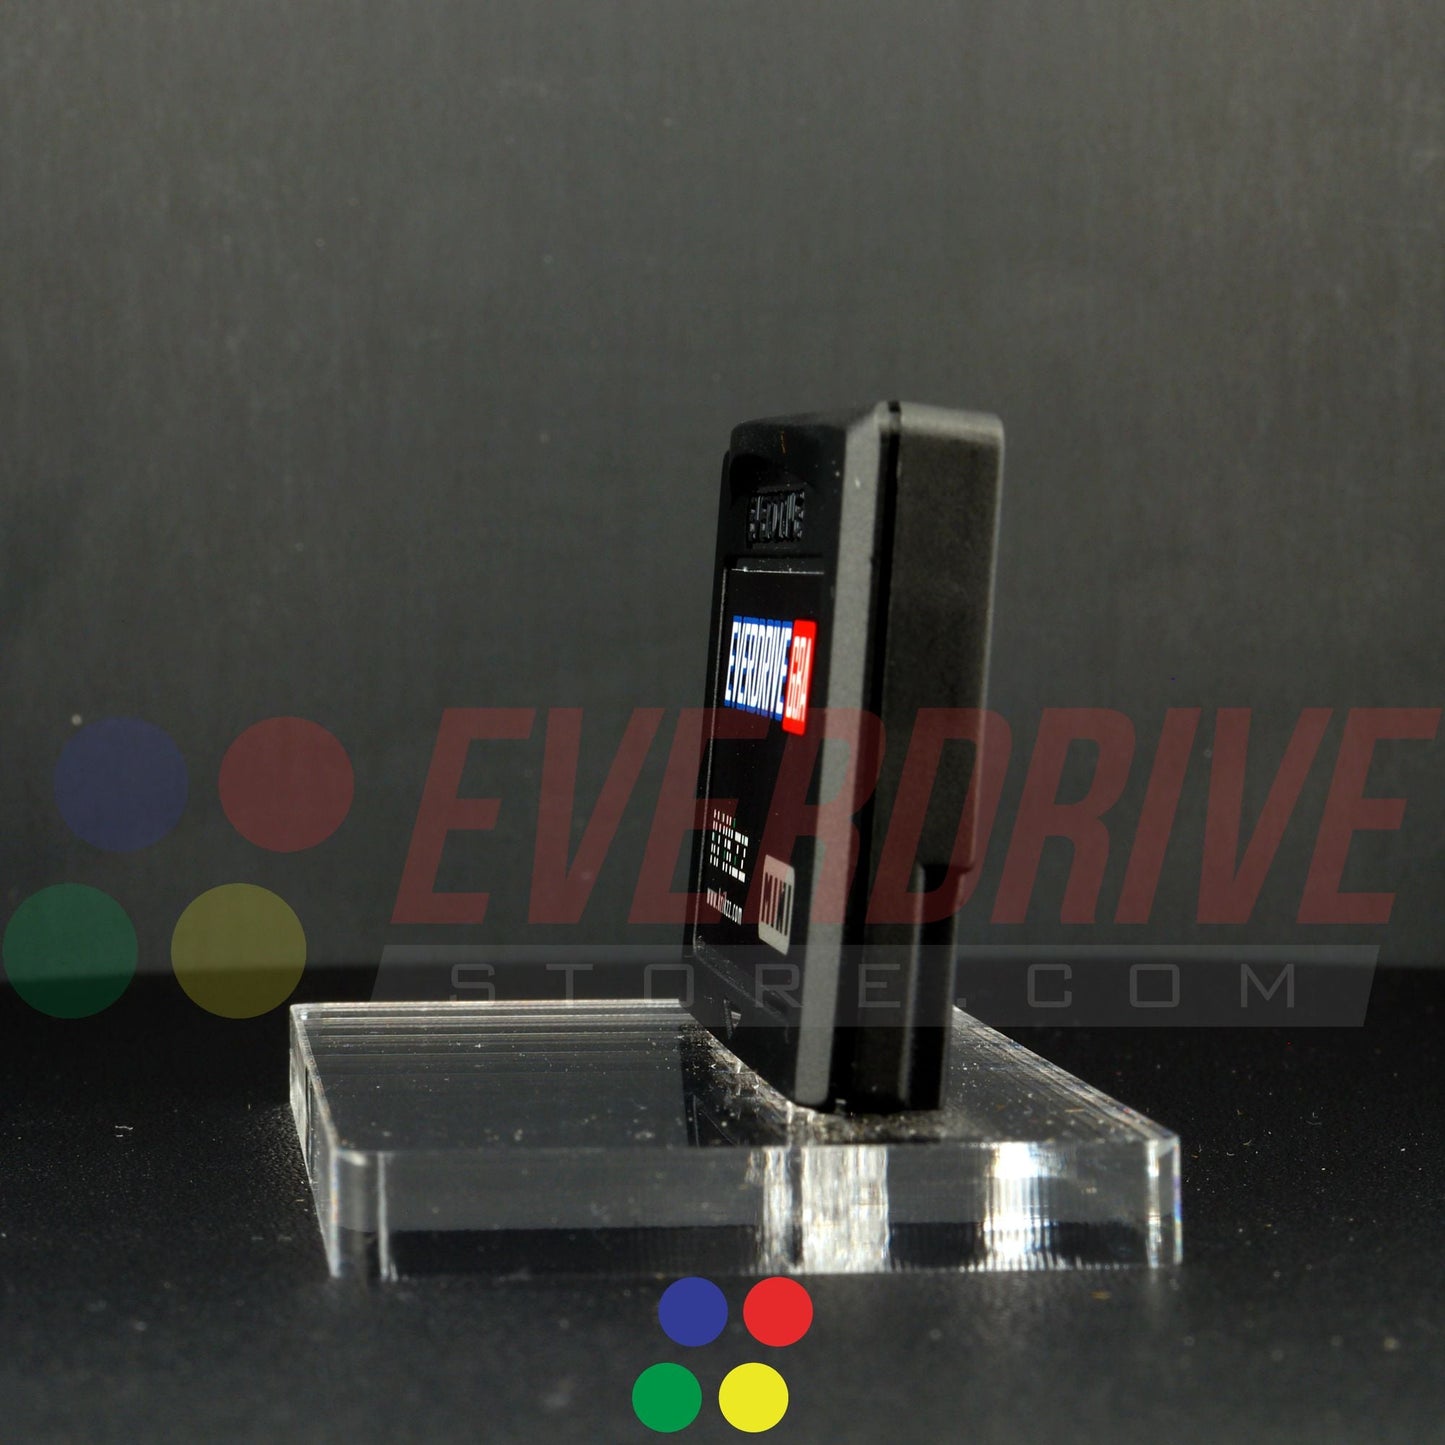 Everdrive GBA Mini - Black